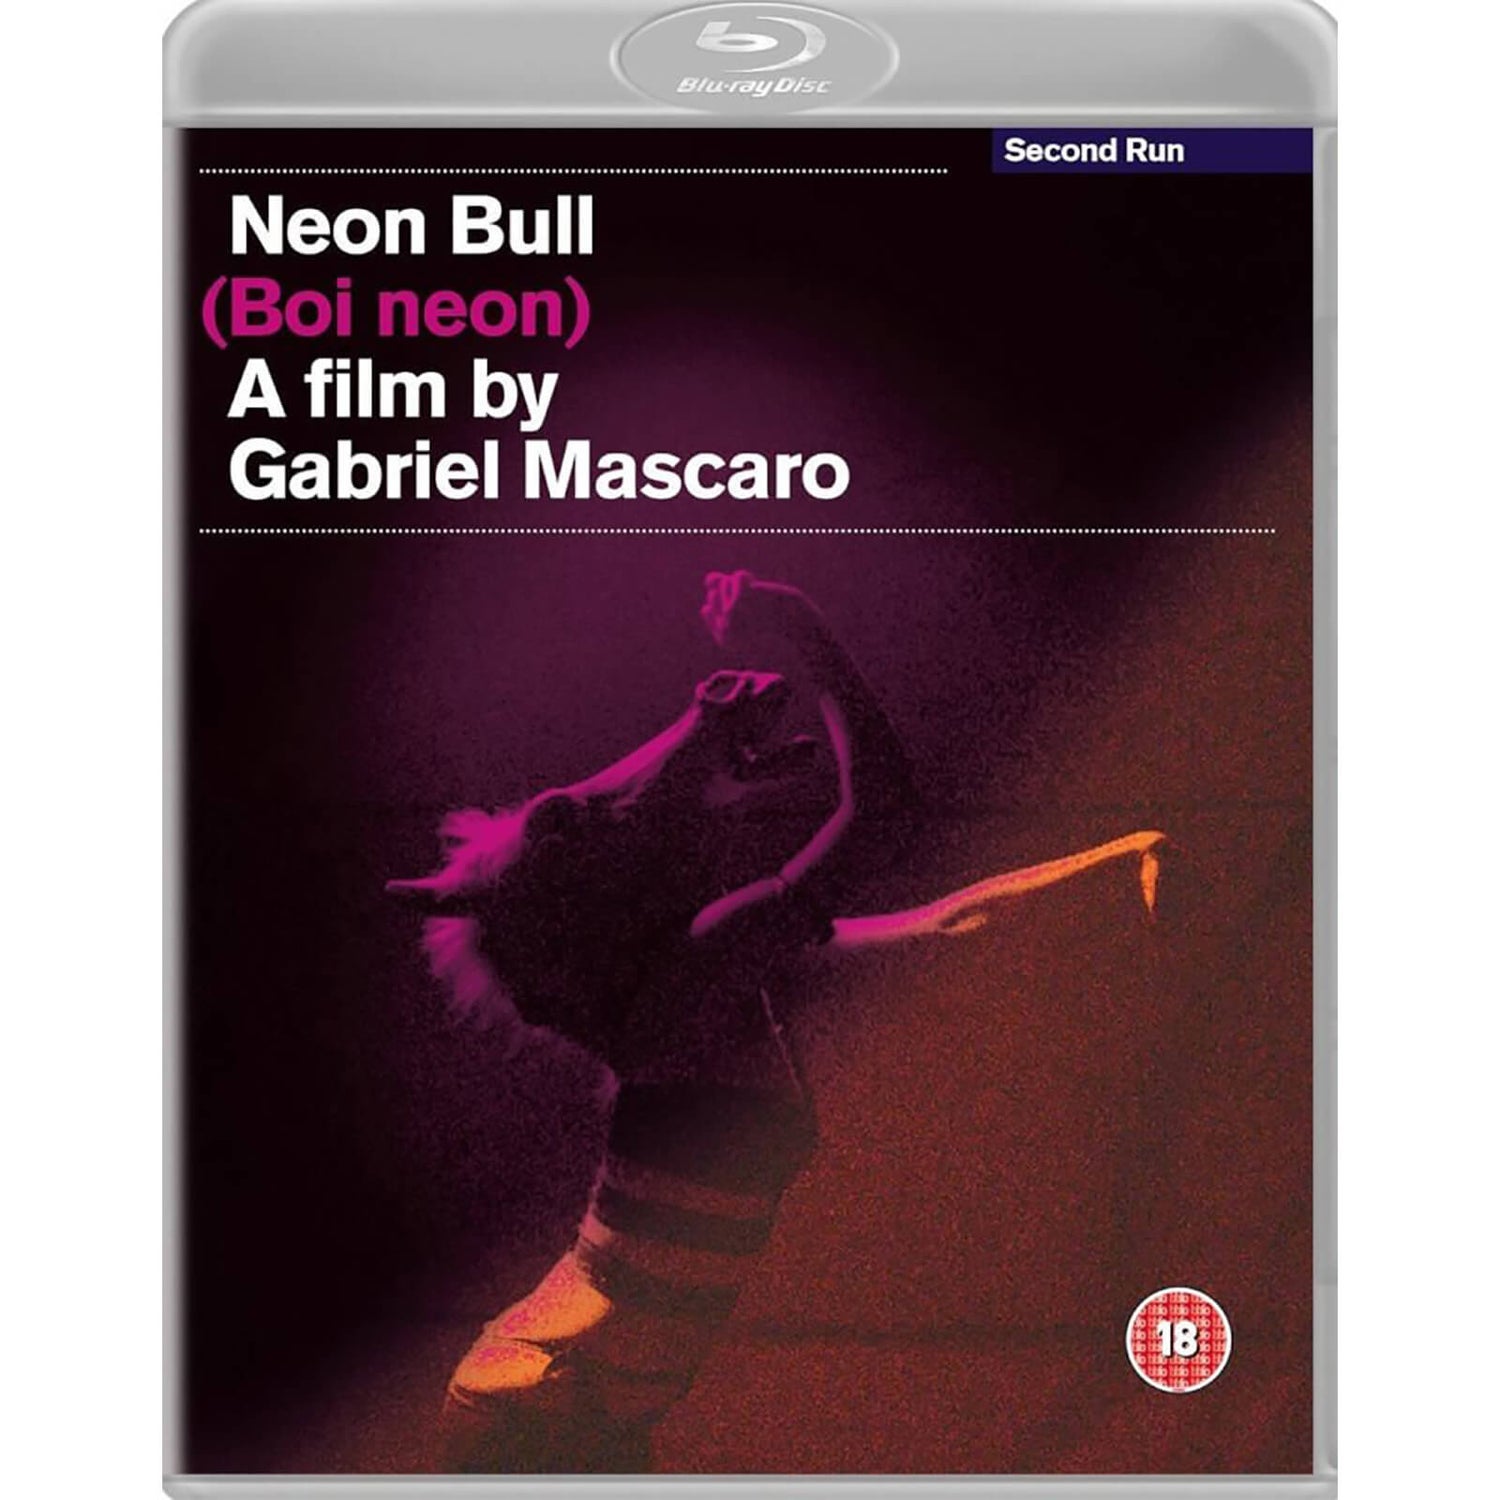 Neon Bull Blu-ray